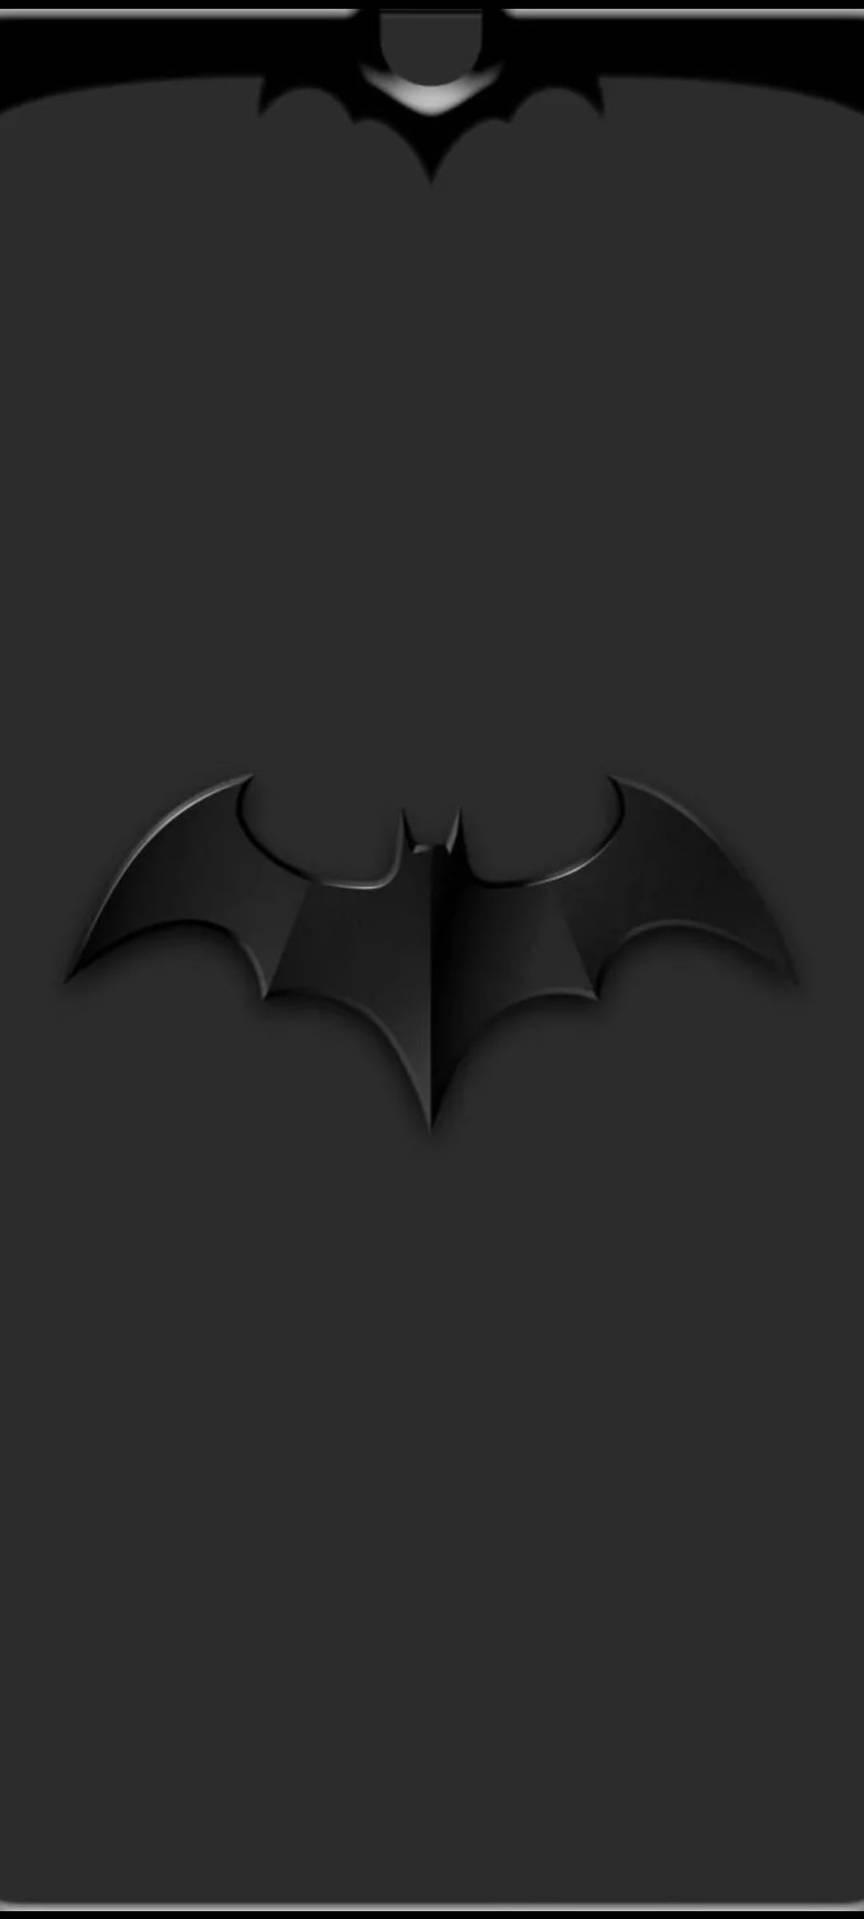 Embossed Black Batman Logo iPhone Wallpaper